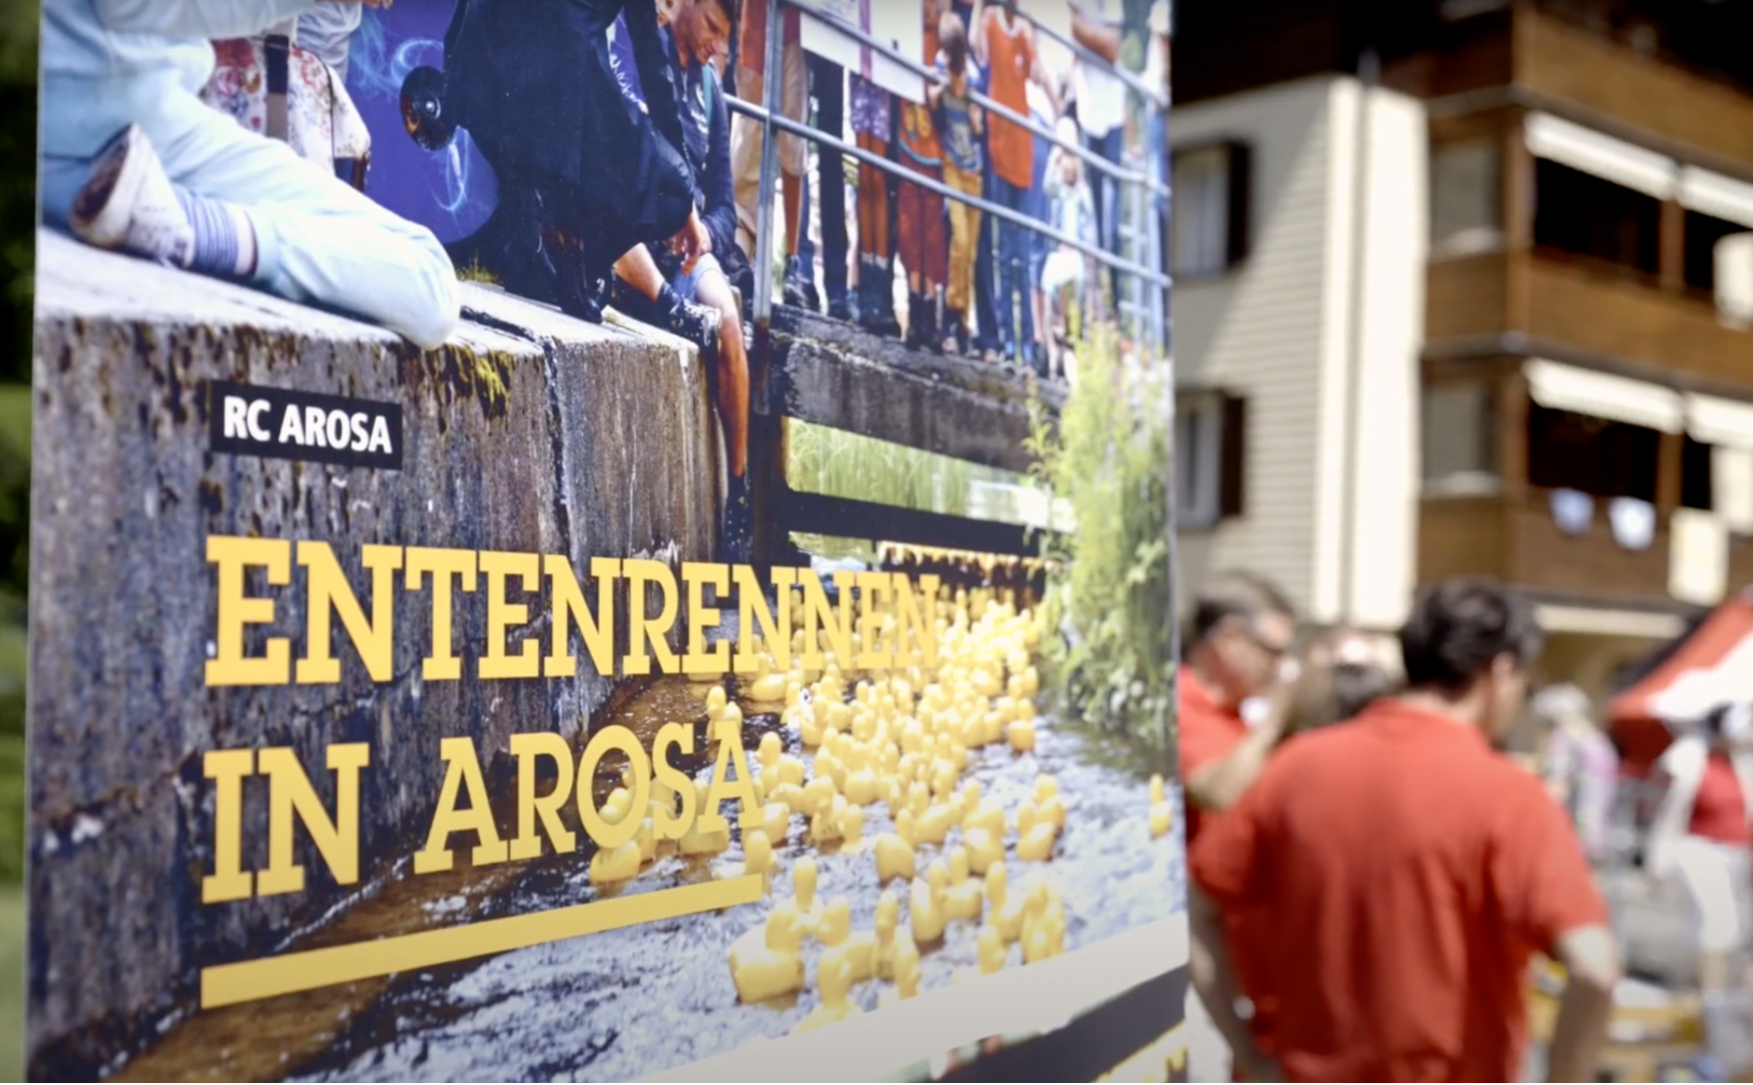 Am 1. August schwammen die Rotary-Enten in Arosa wieder für den guten Zweck um die Wette.